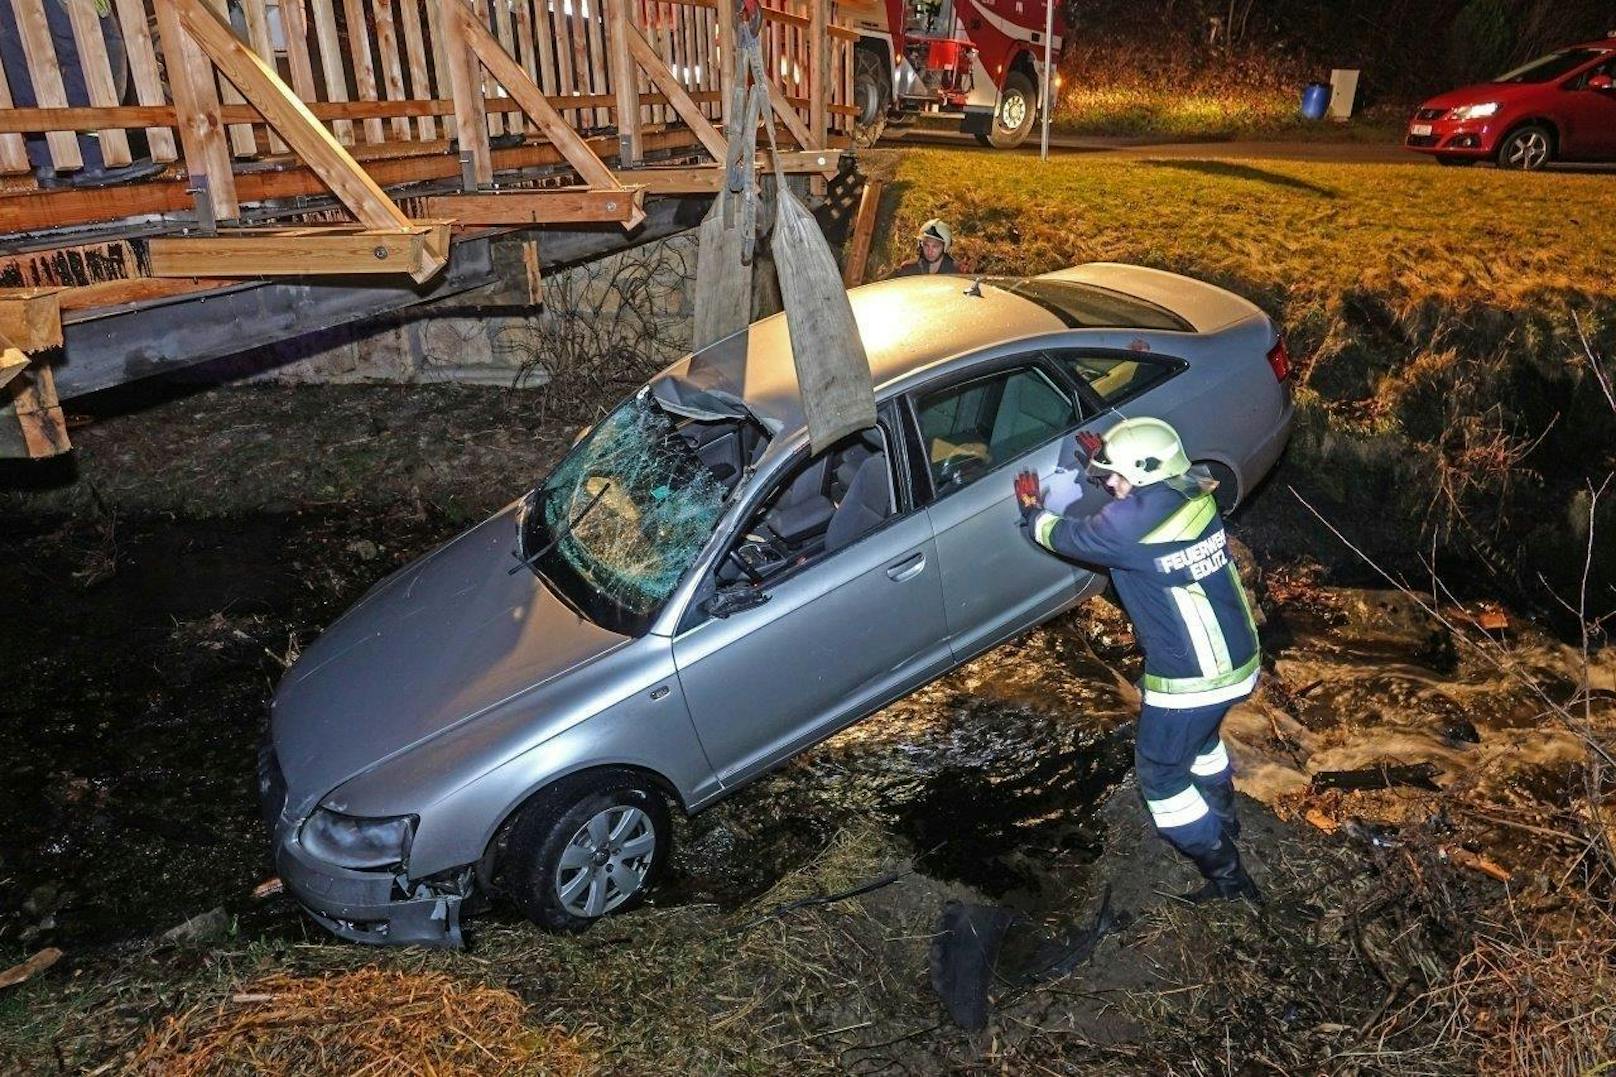 Spektakulärer Crash: Audi landete in Bach, Balken bohrt sich durch die Windschutzscheibe